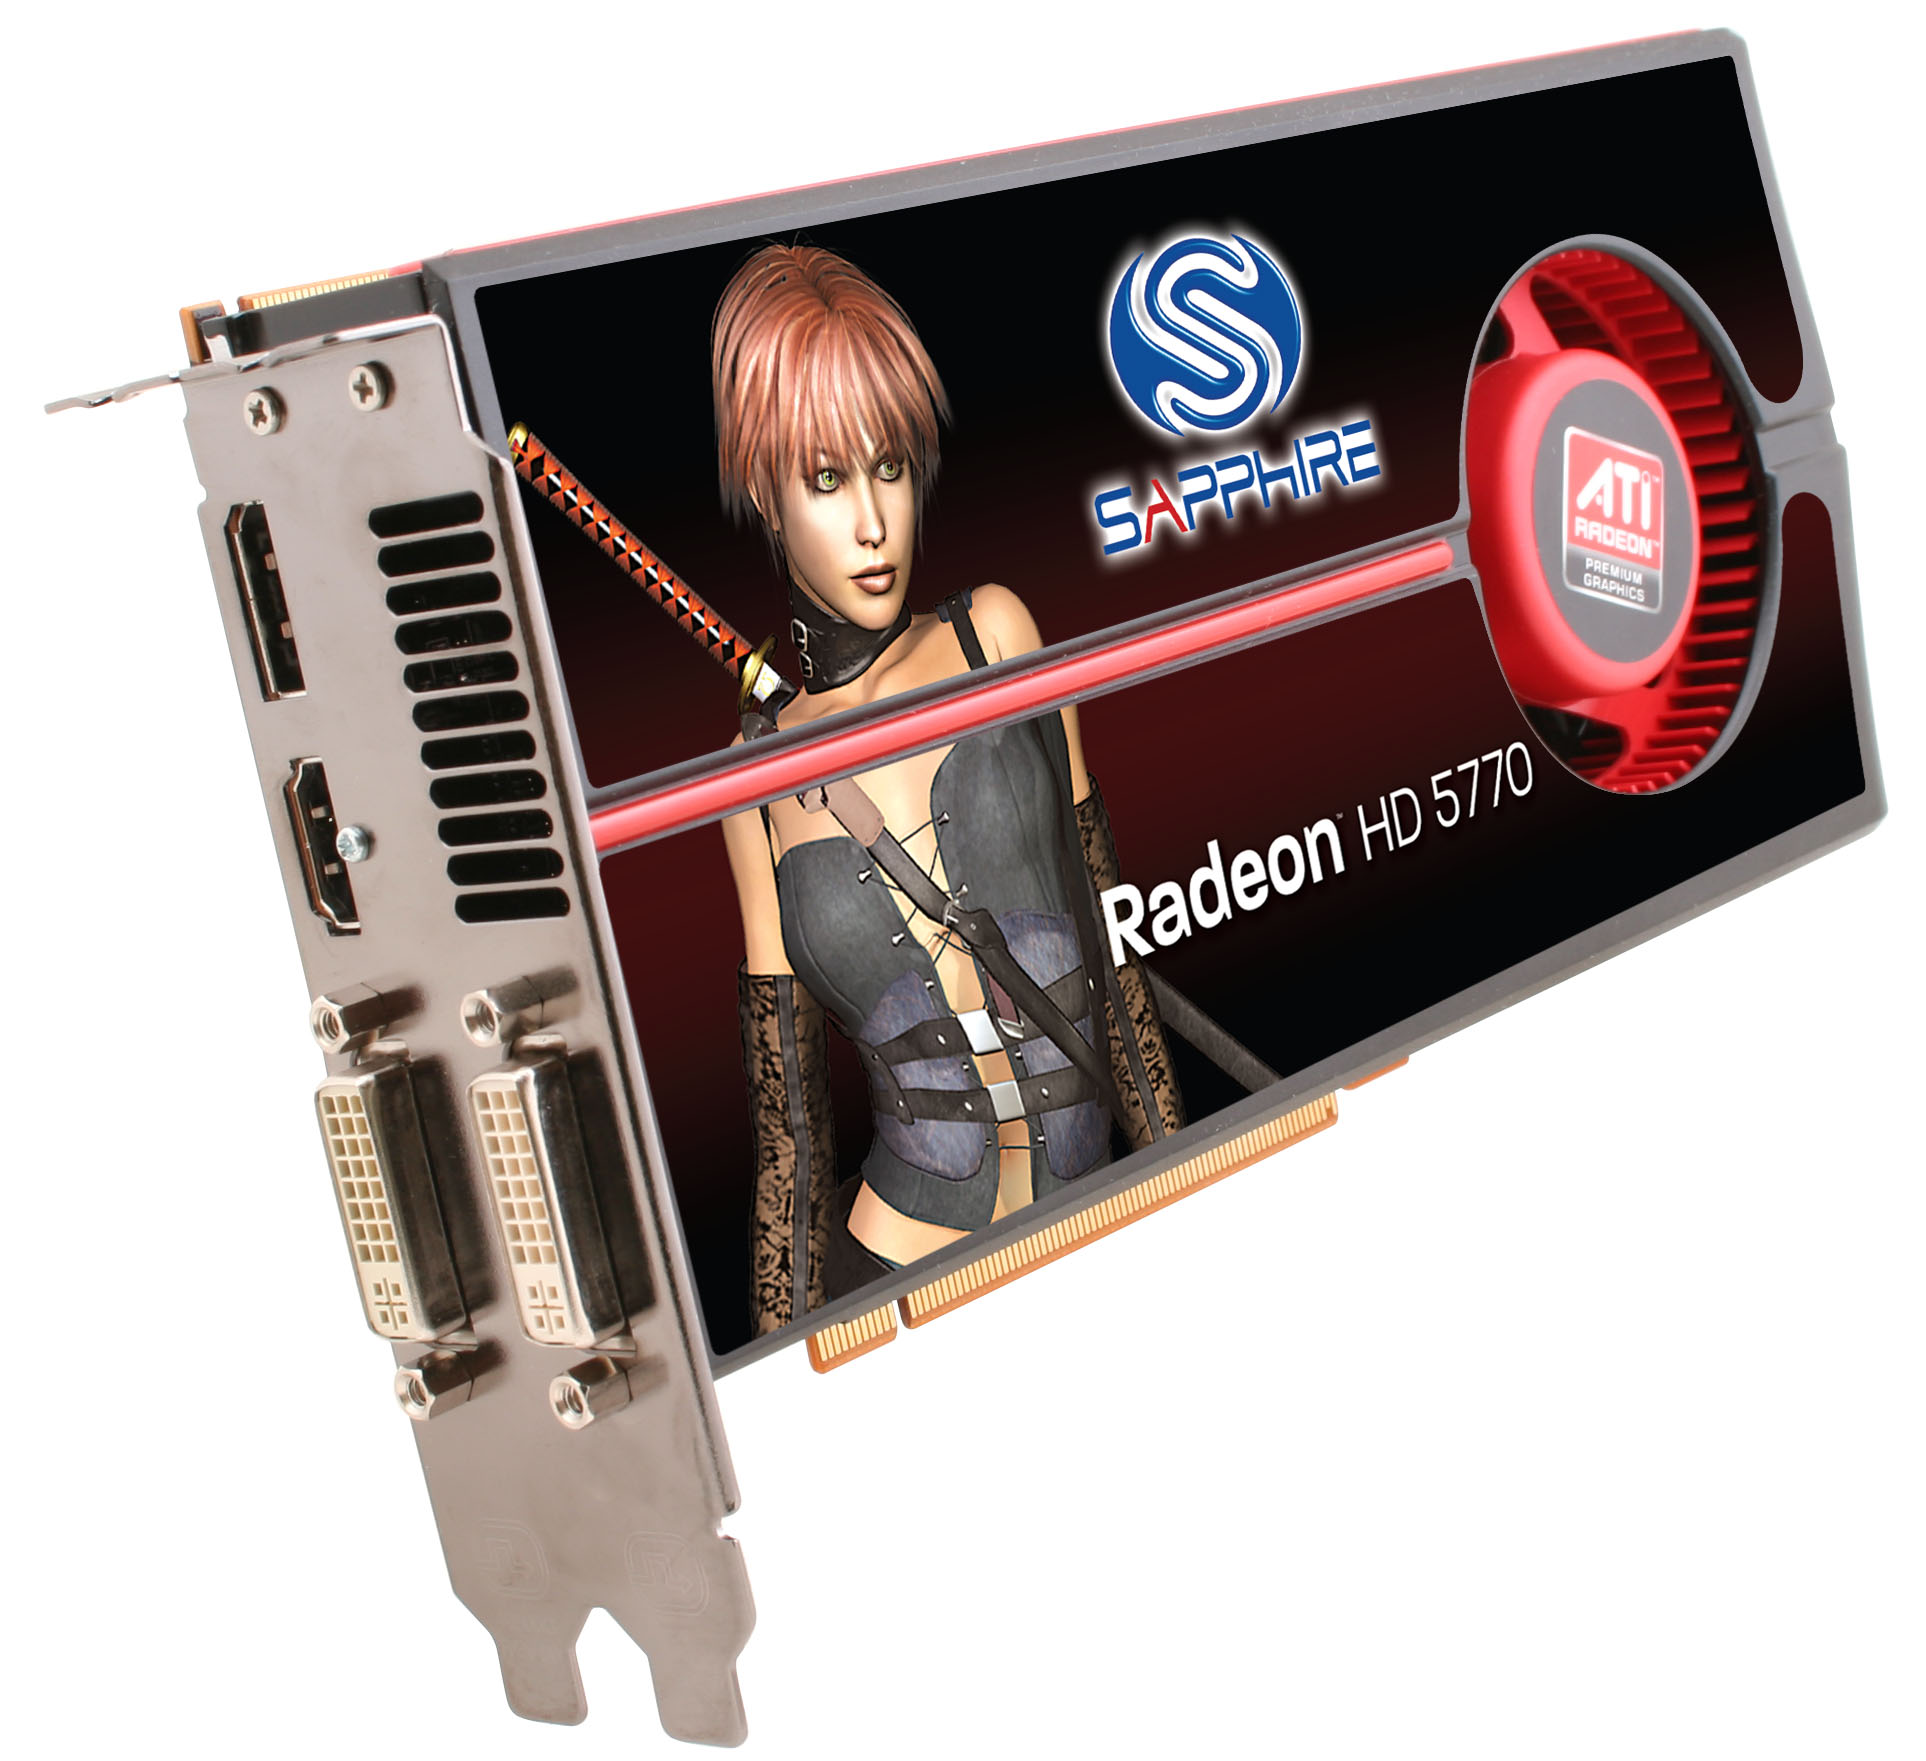 Immagine pubblicata in relazione al seguente contenuto: SAPPHIRE lancia le schede grafiche Radeon HD5770 e HD5750 | Nome immagine: news11678_7.jpg